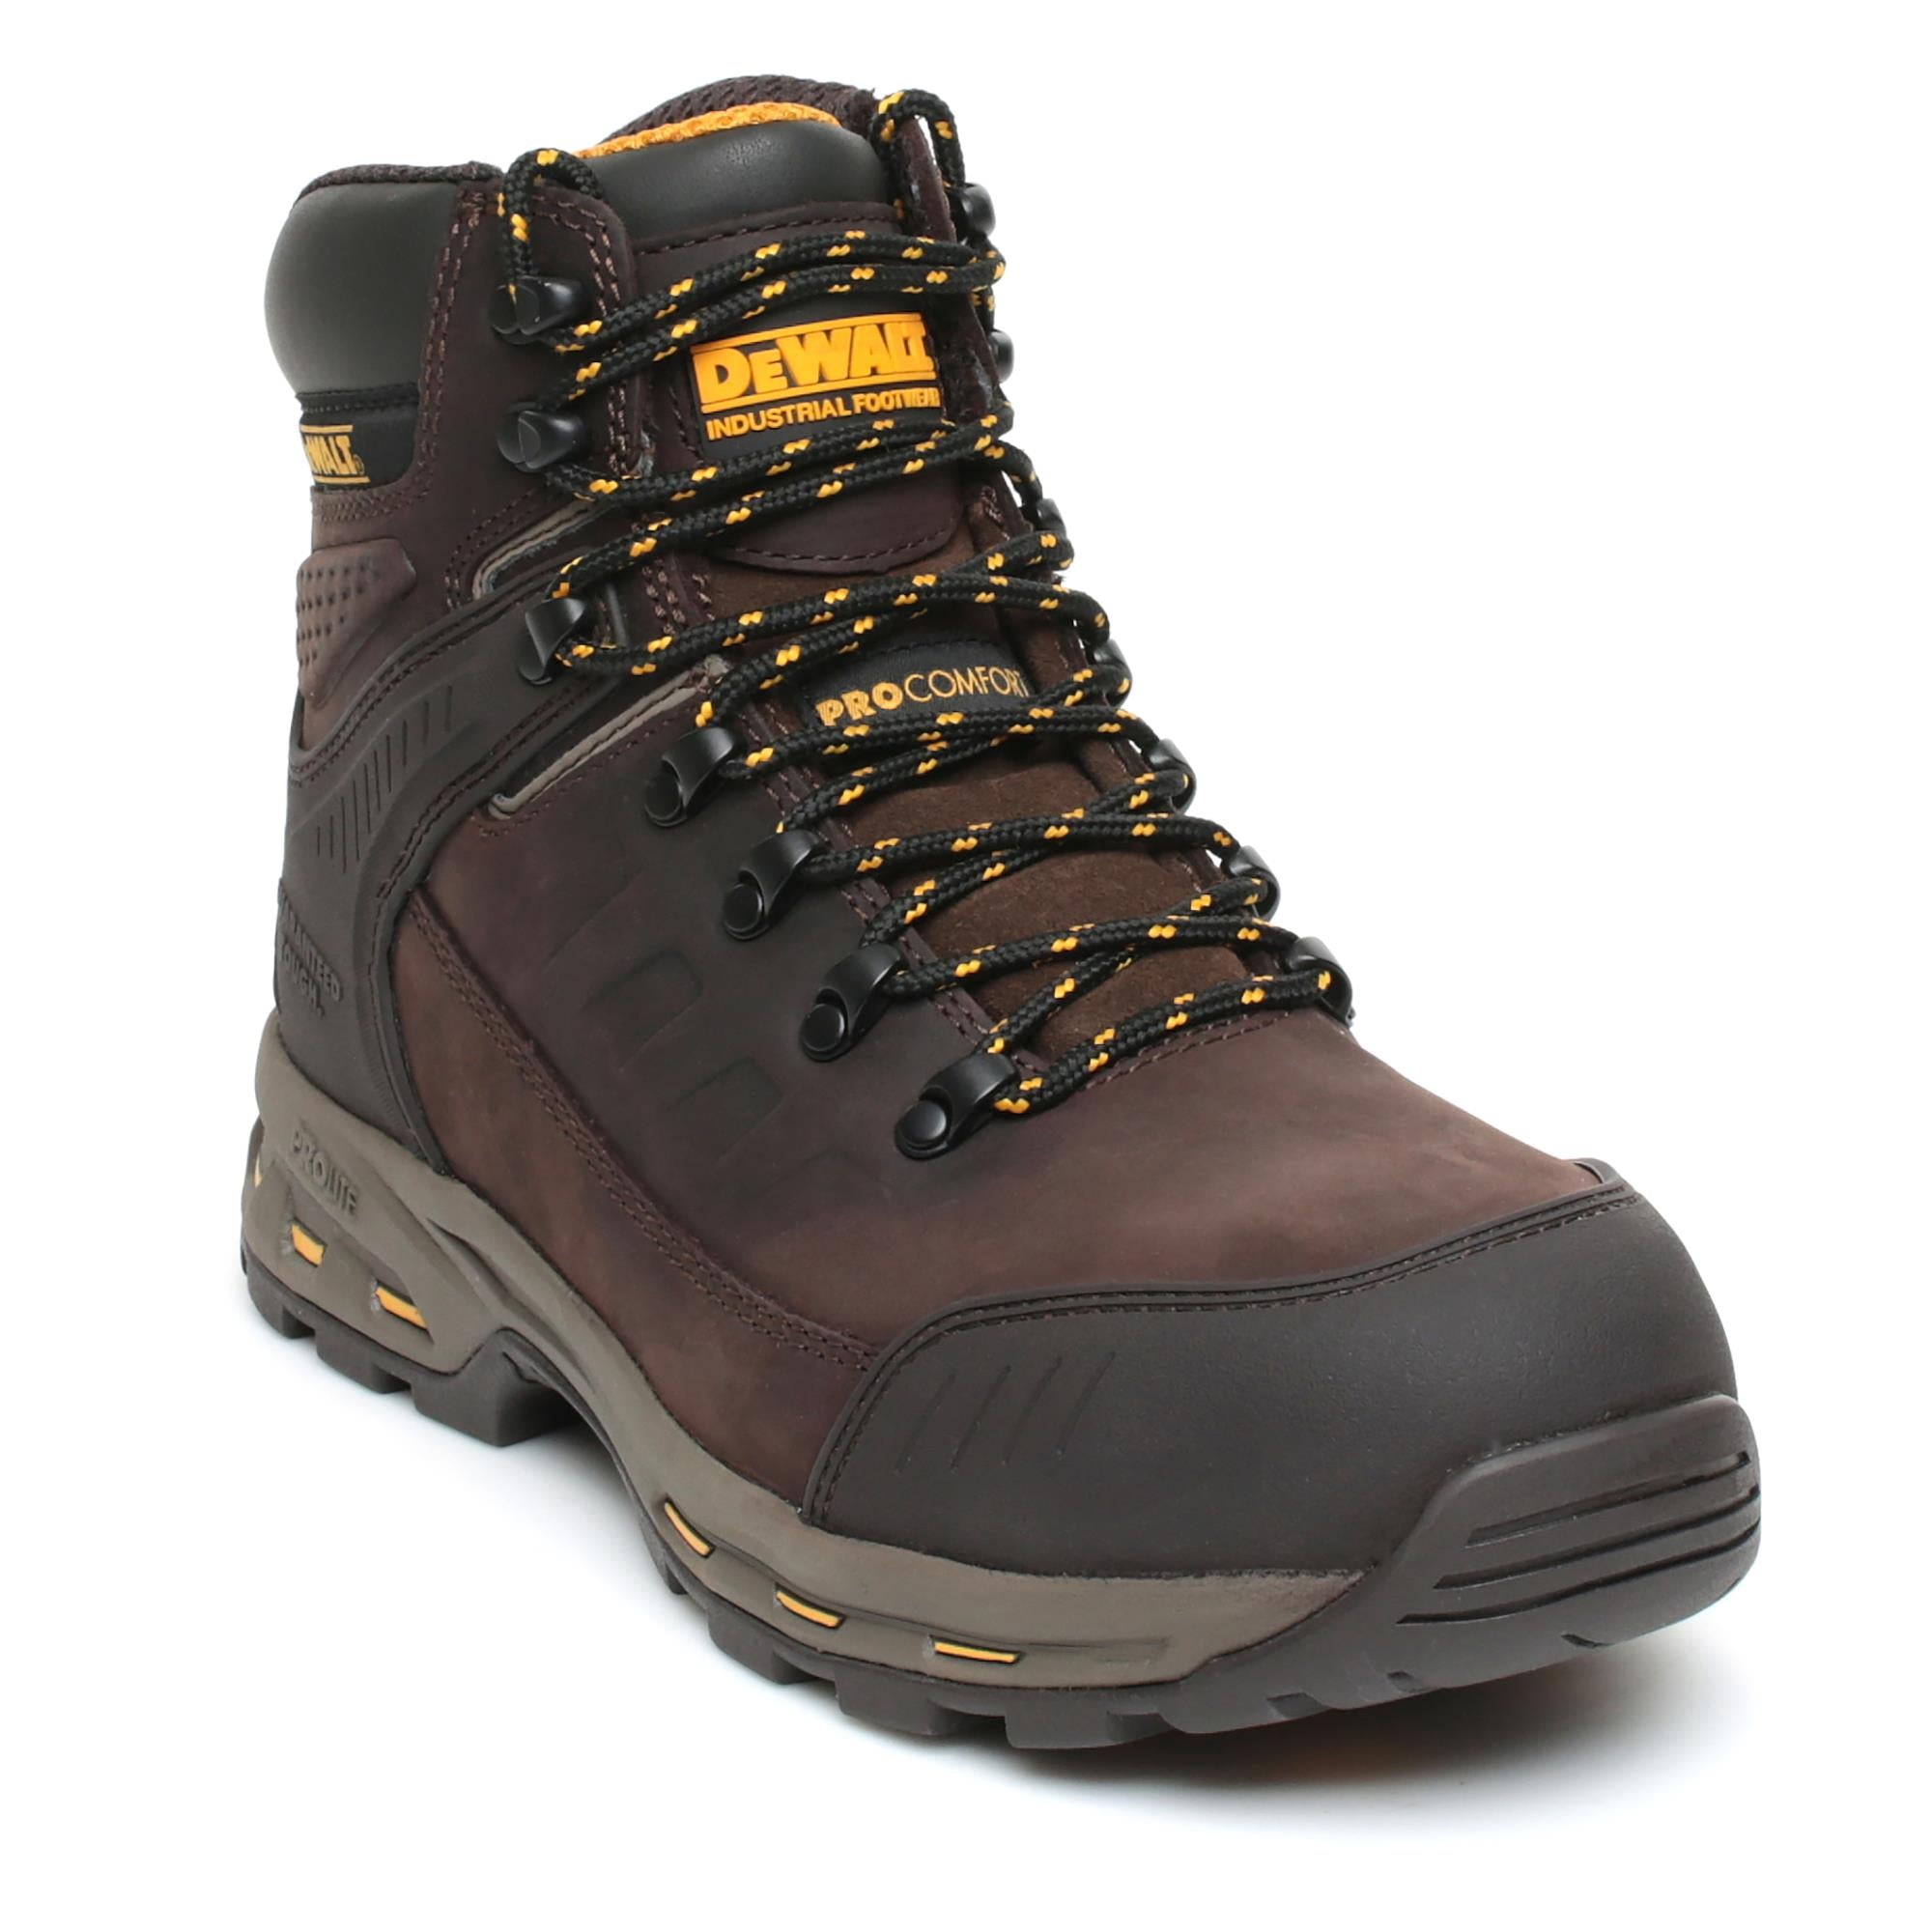 DeWalt Kirksville S3 brown ProLite lightweight composite work safety boots